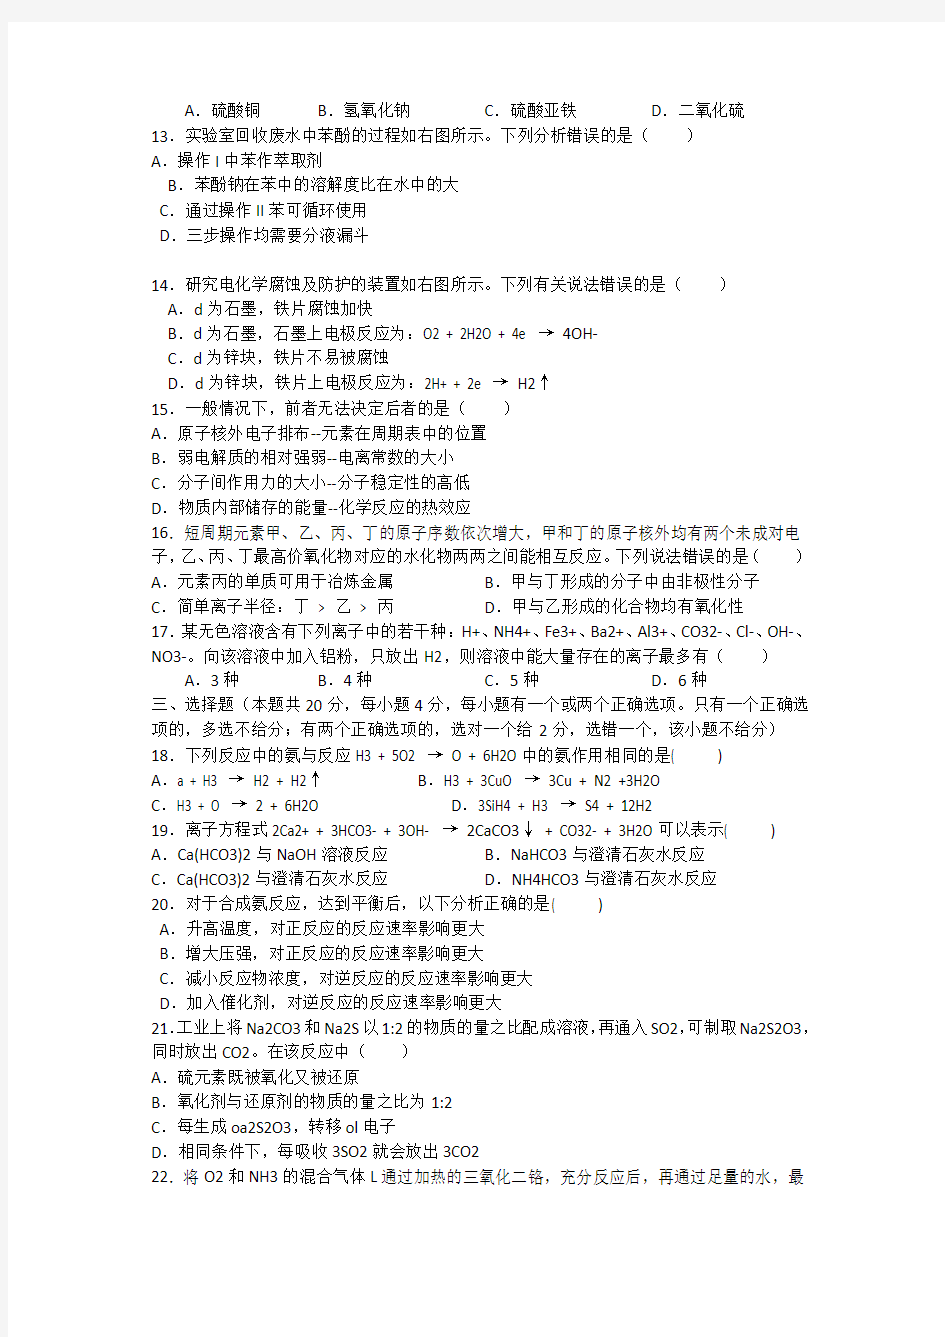 2015高考真题——化学(上海卷)Word版含答案